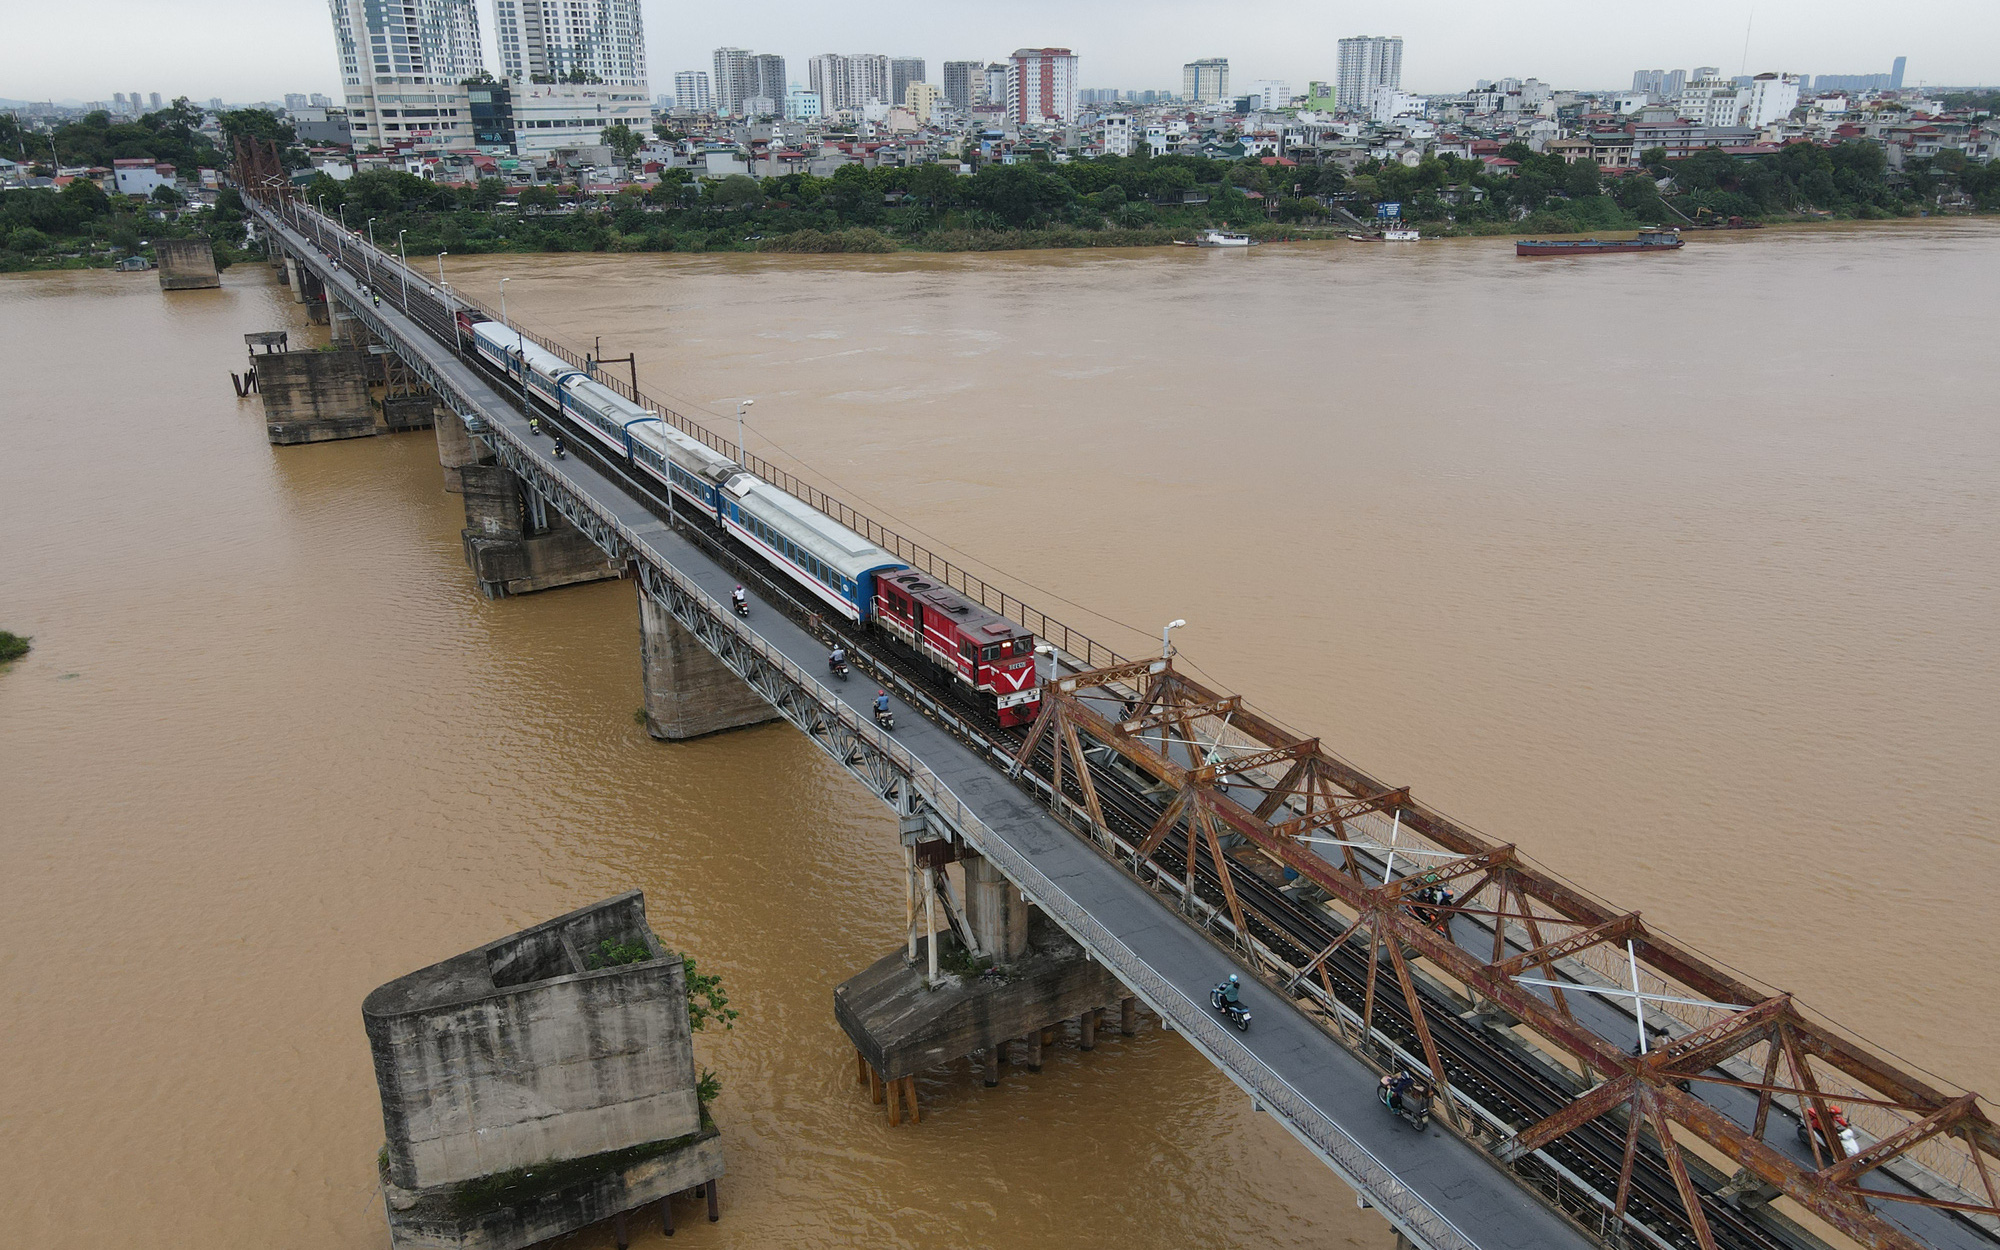 Chuyến tàu đầu tiên “phá băng” đường sắt Hà Nội sau dịch Covid-19